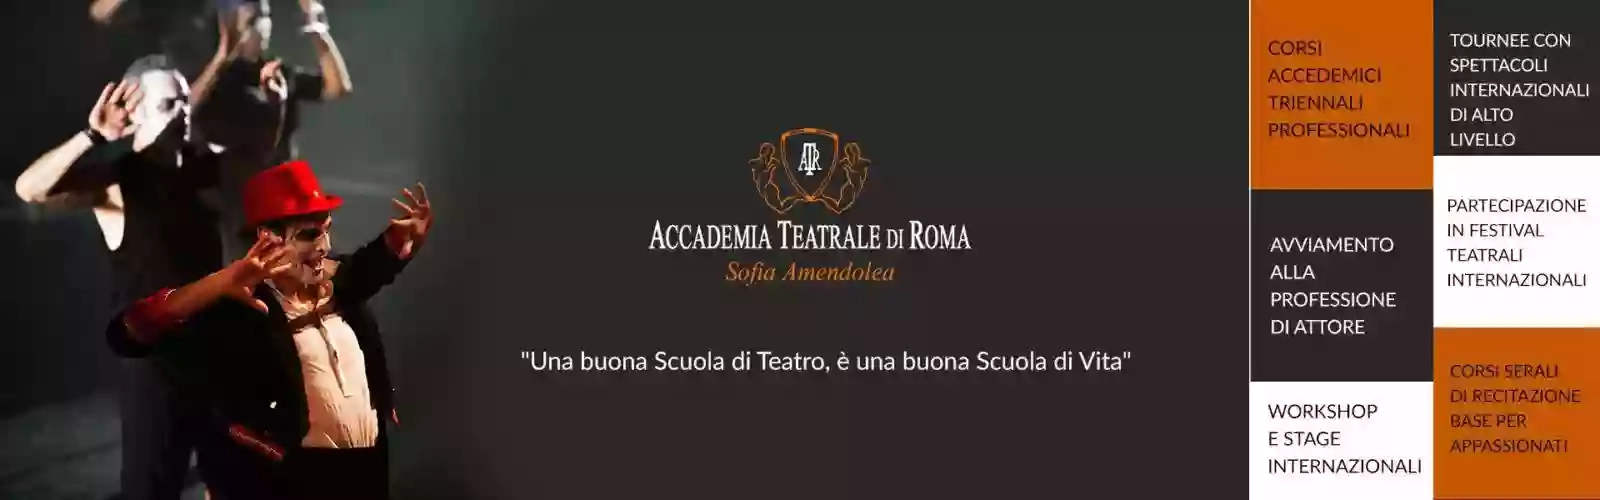 Accademia Teatrale di Roma "Sofia Amendolea" - Scuola di Recitazione Triennale